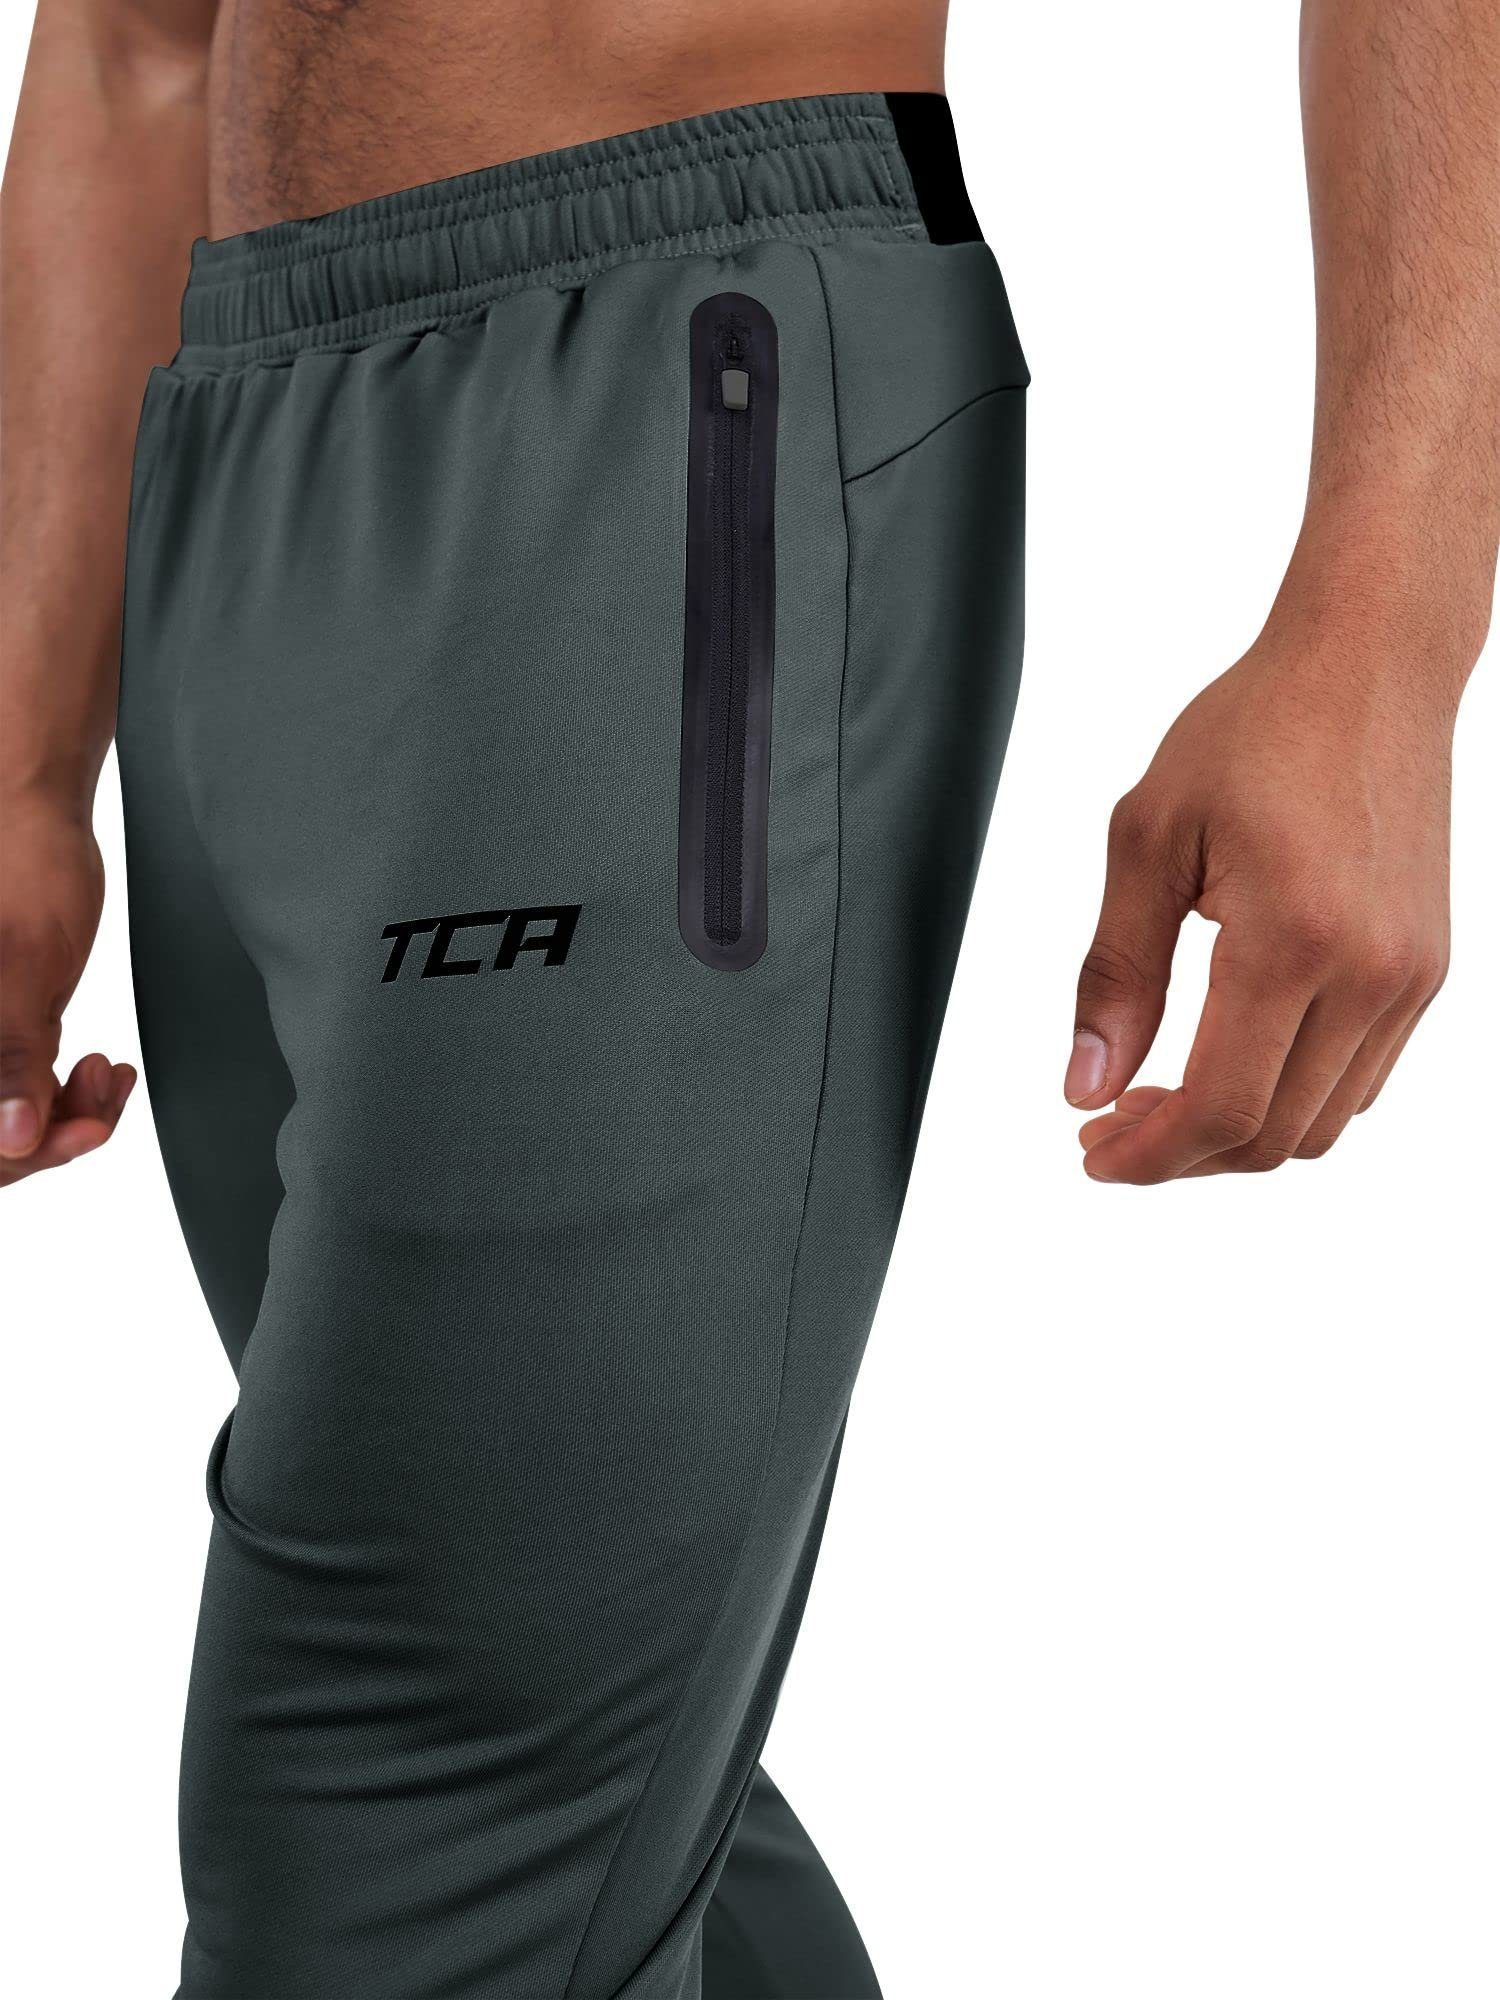 Jogginghose Herren Quickdry Reißverschlusstaschen Dunkelgrün TCA - Laufhose mit TCA